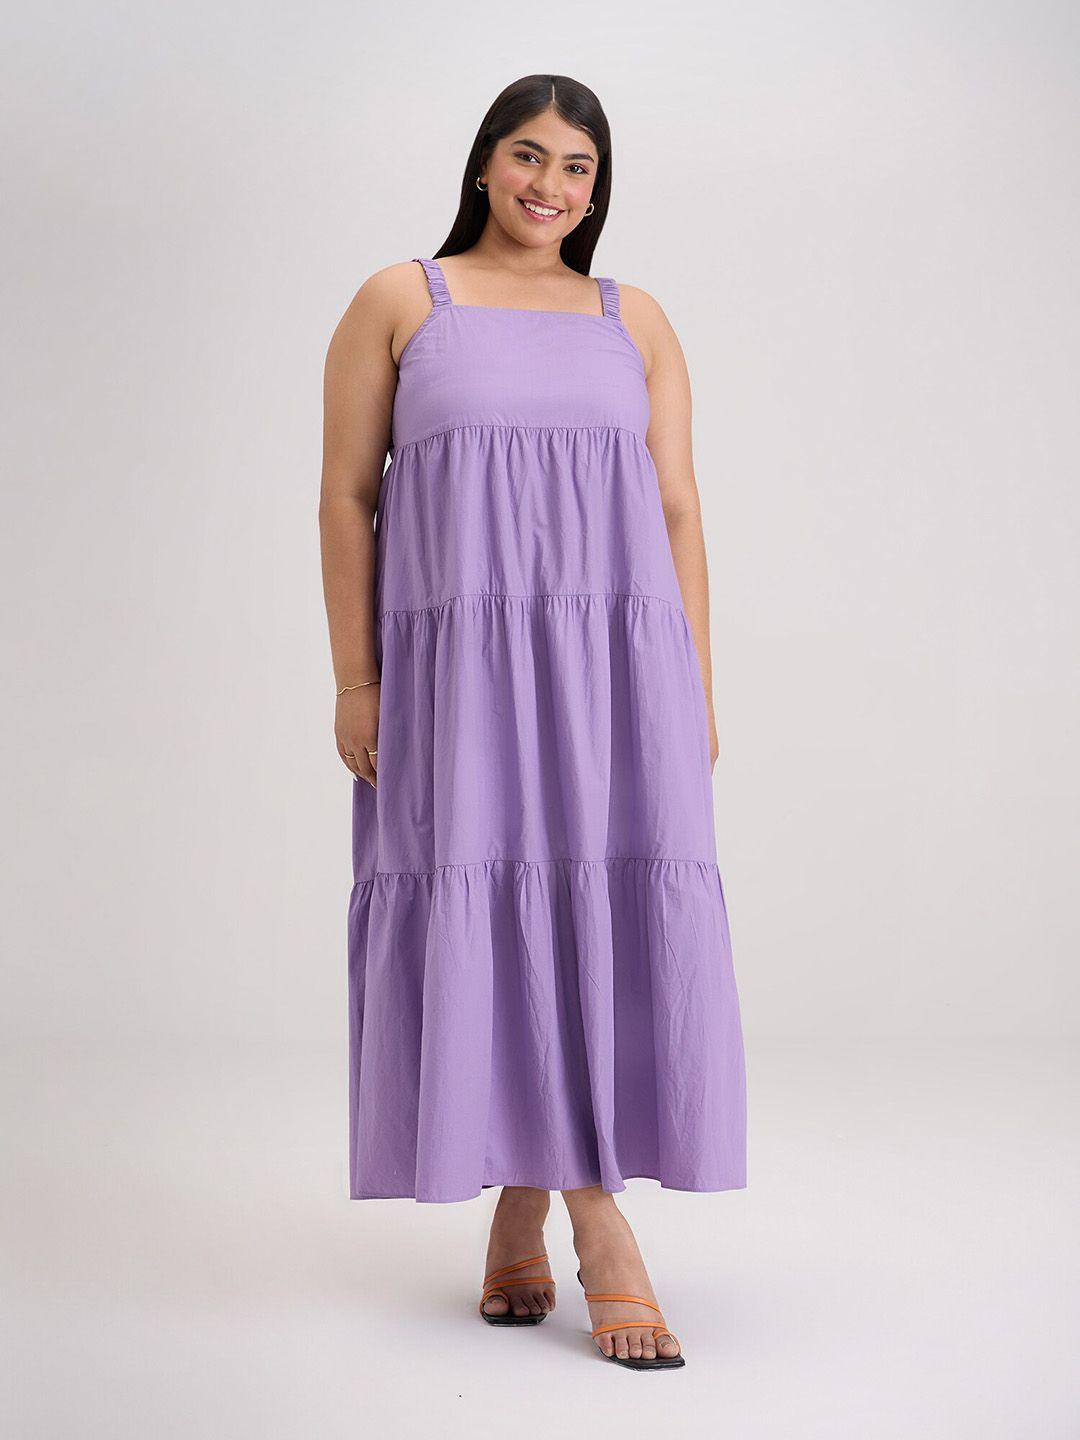 20dresses lavender cotton empire dress